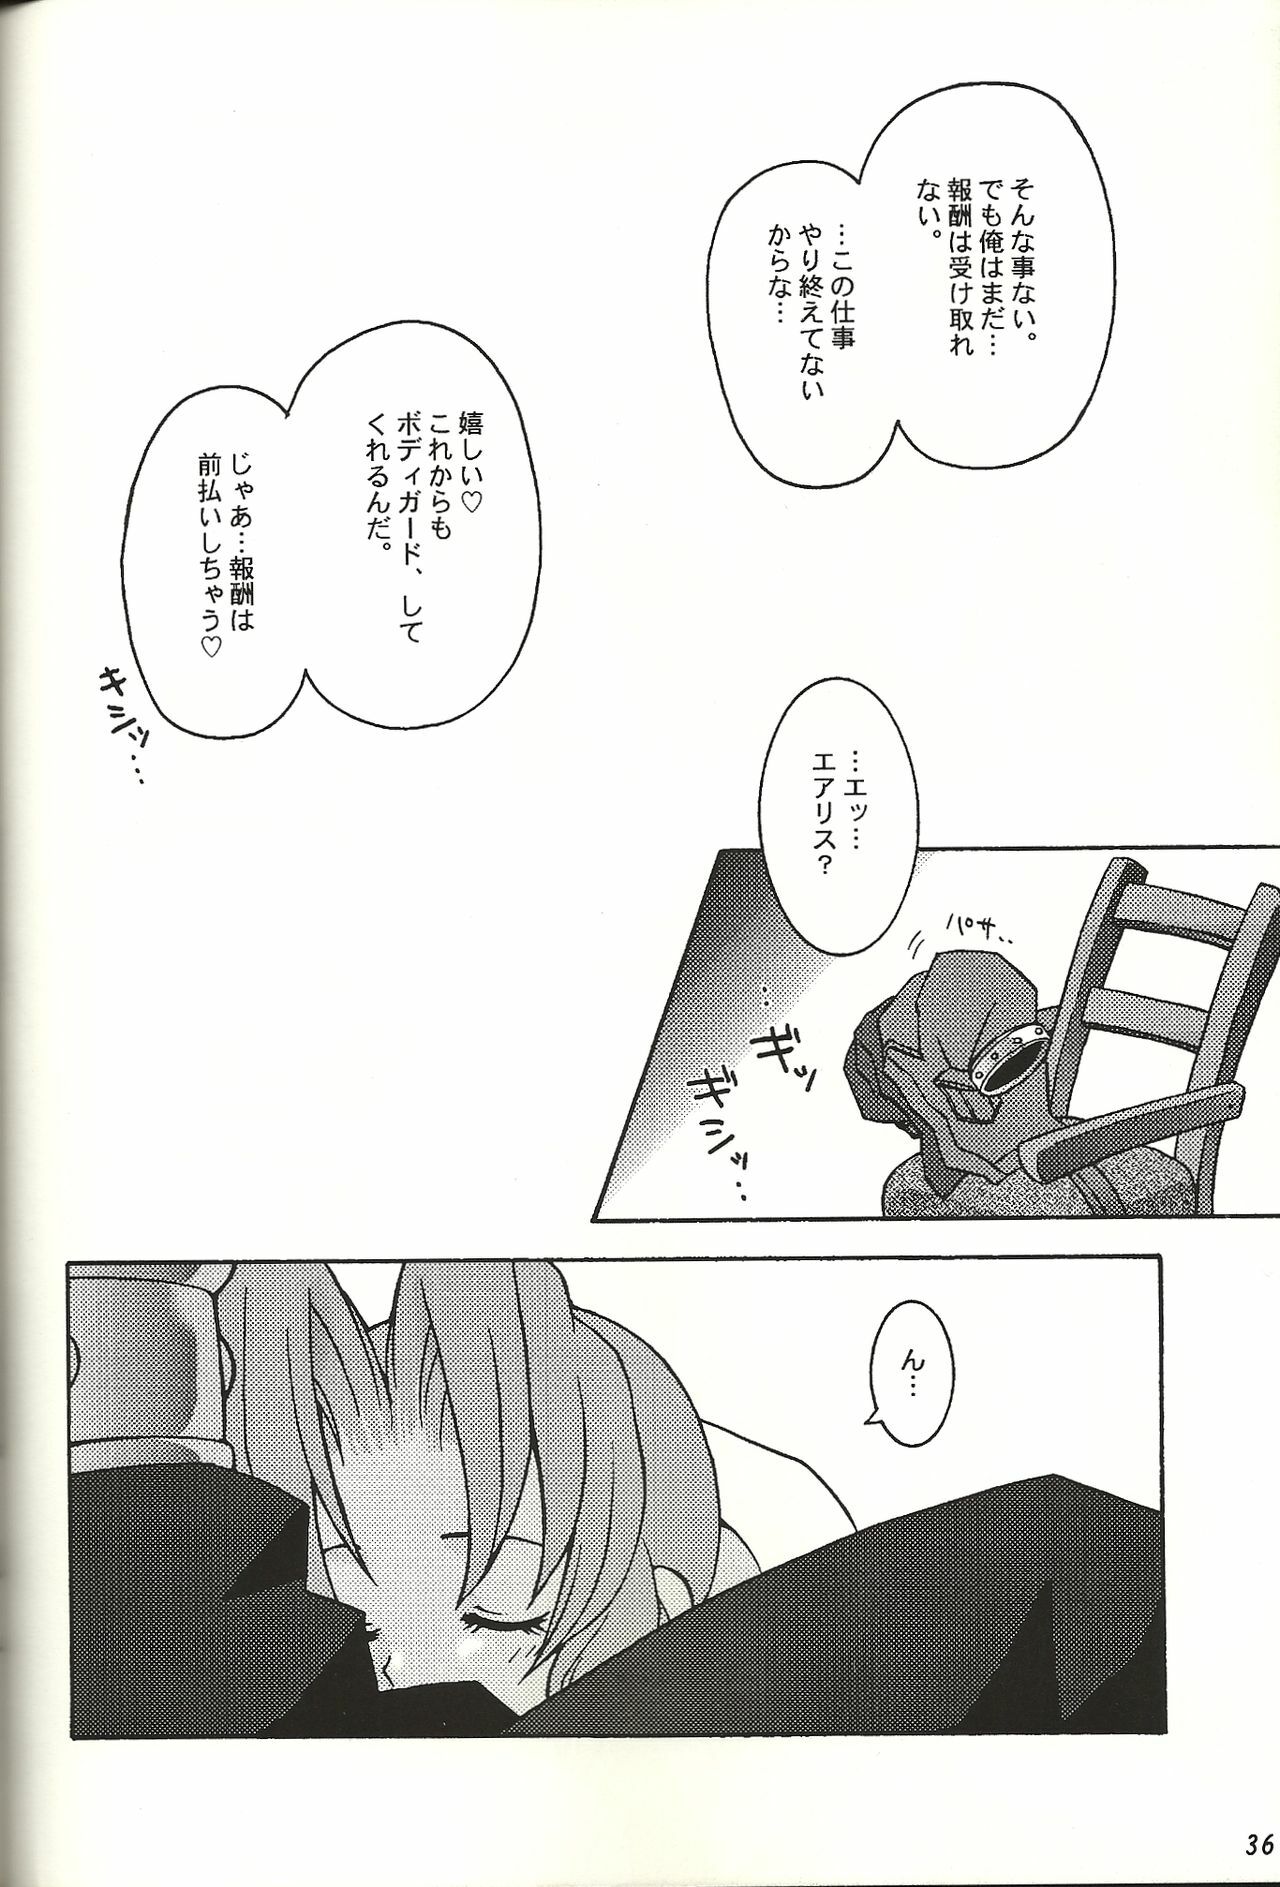 (CR21) [Bakuhatsu BRS. (B.Tarou)] Renai Shiyou (Final Fantasy VII) page 36 full